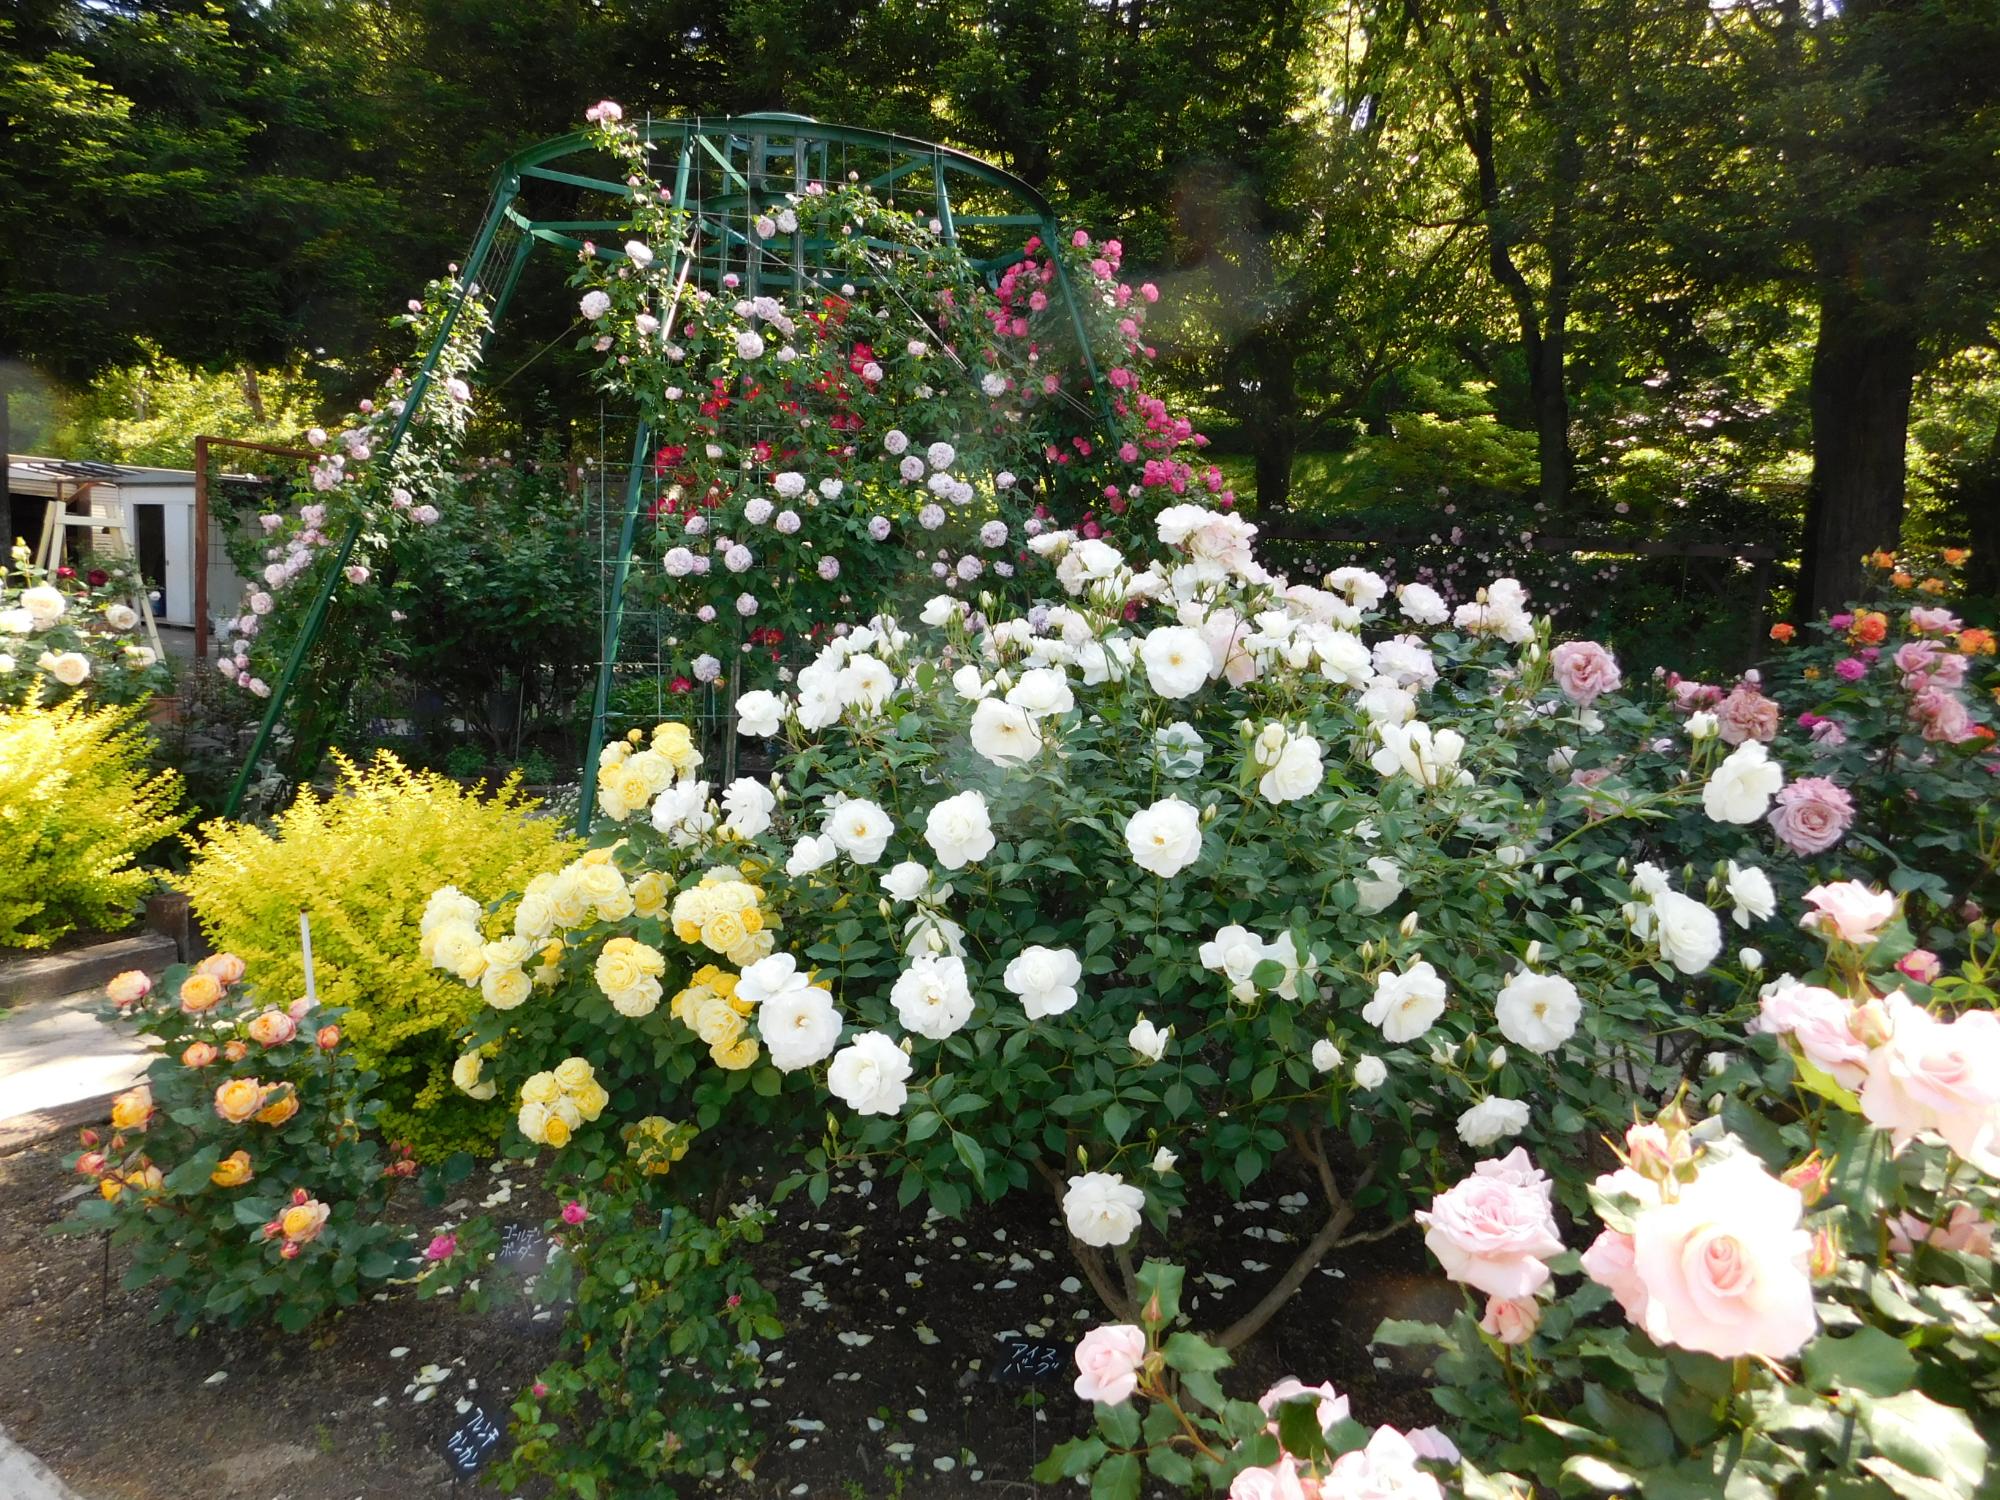 このはな館周りにあるバラ園では、バラの花が満開になっています。好みのバラを探してみてはいかがでしょうか。